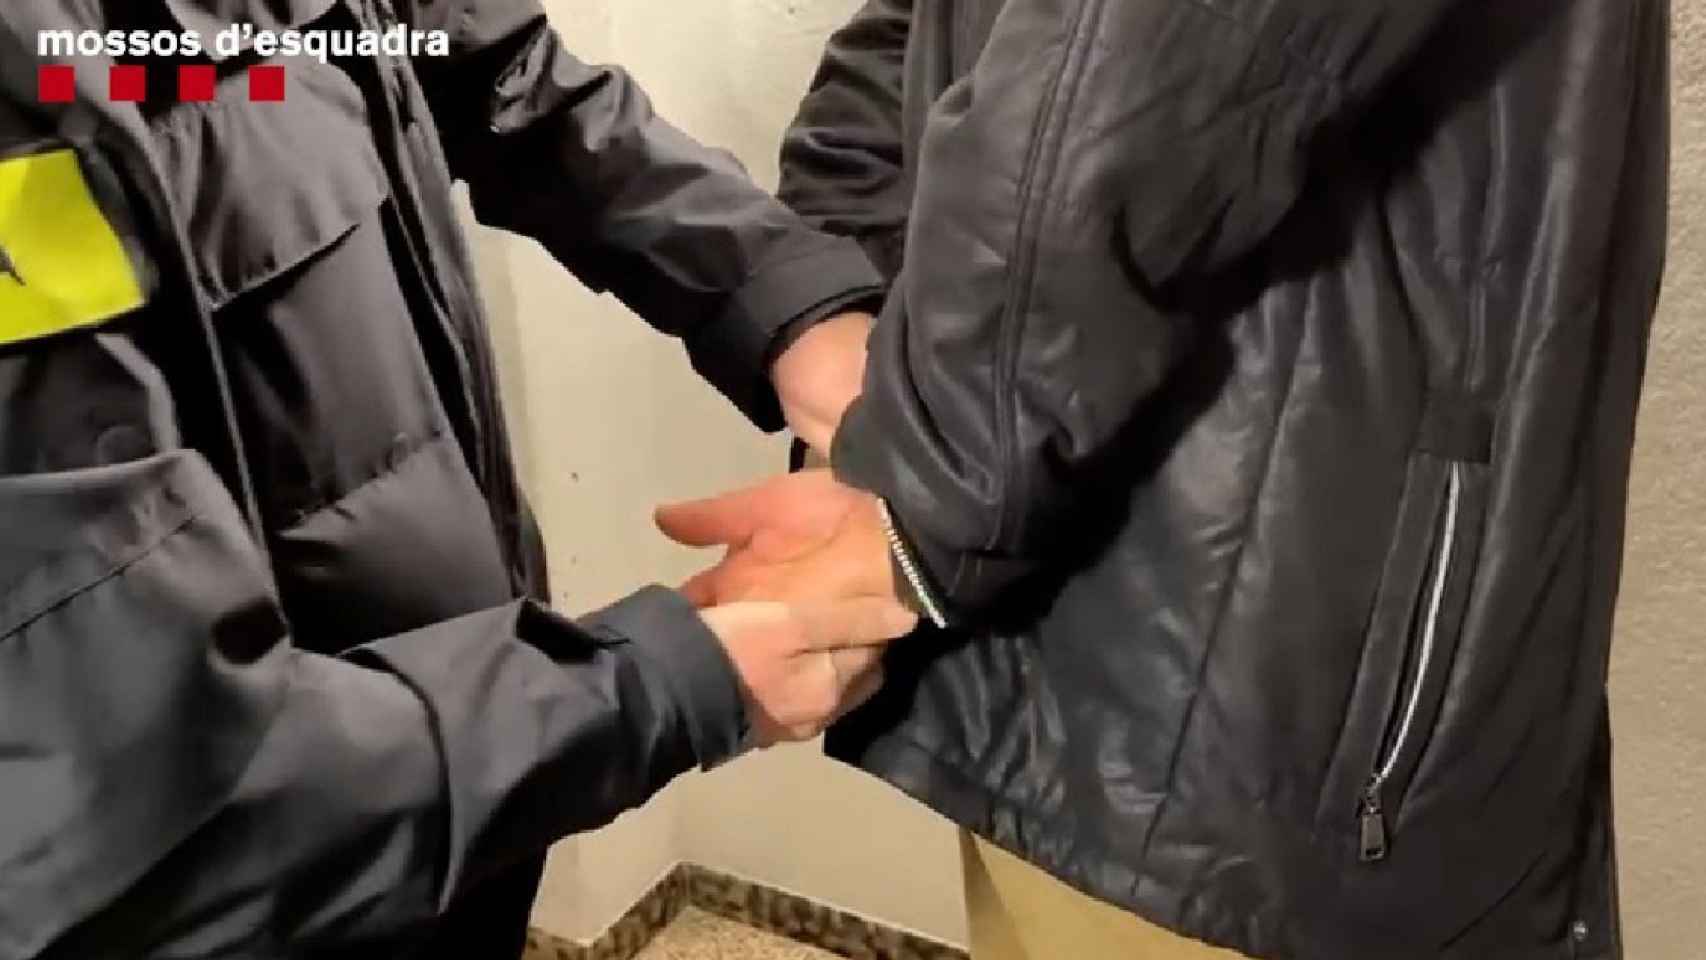 Los Mossos efectúan una detención, como la del fugitivo arrestado en Barcelona por pertenencia a una peligrosa organización criminal alemana / MOSSOS D'ESQUADRA